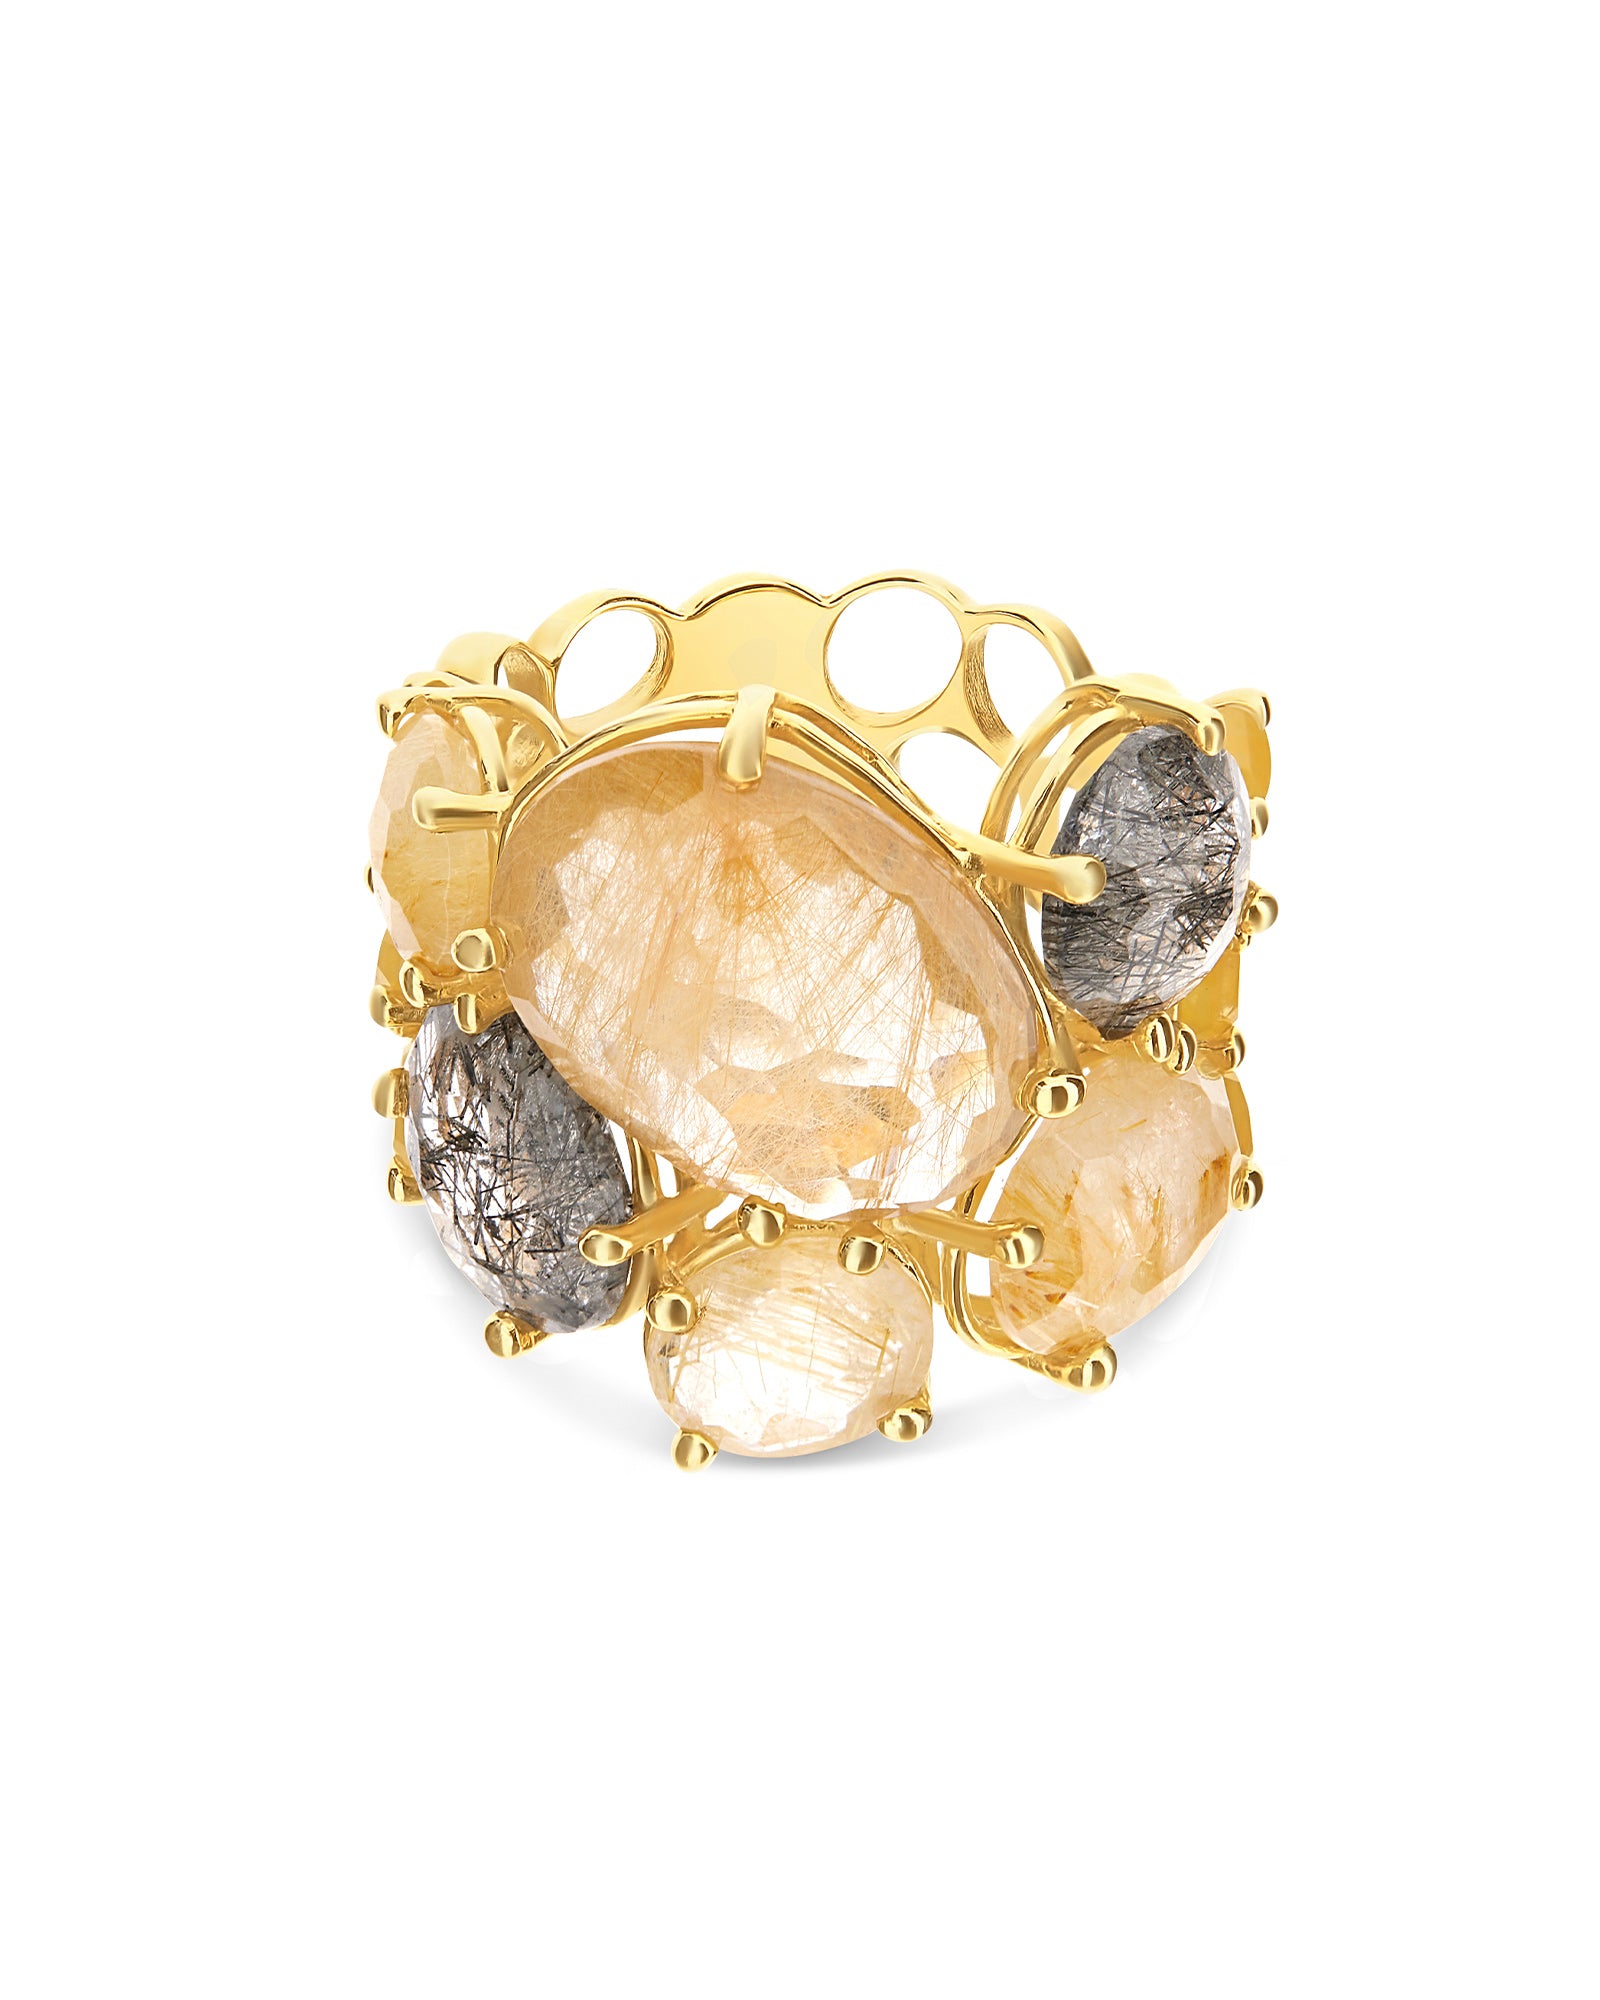 "Ipanema" Gold and Rutilated quartz band ring